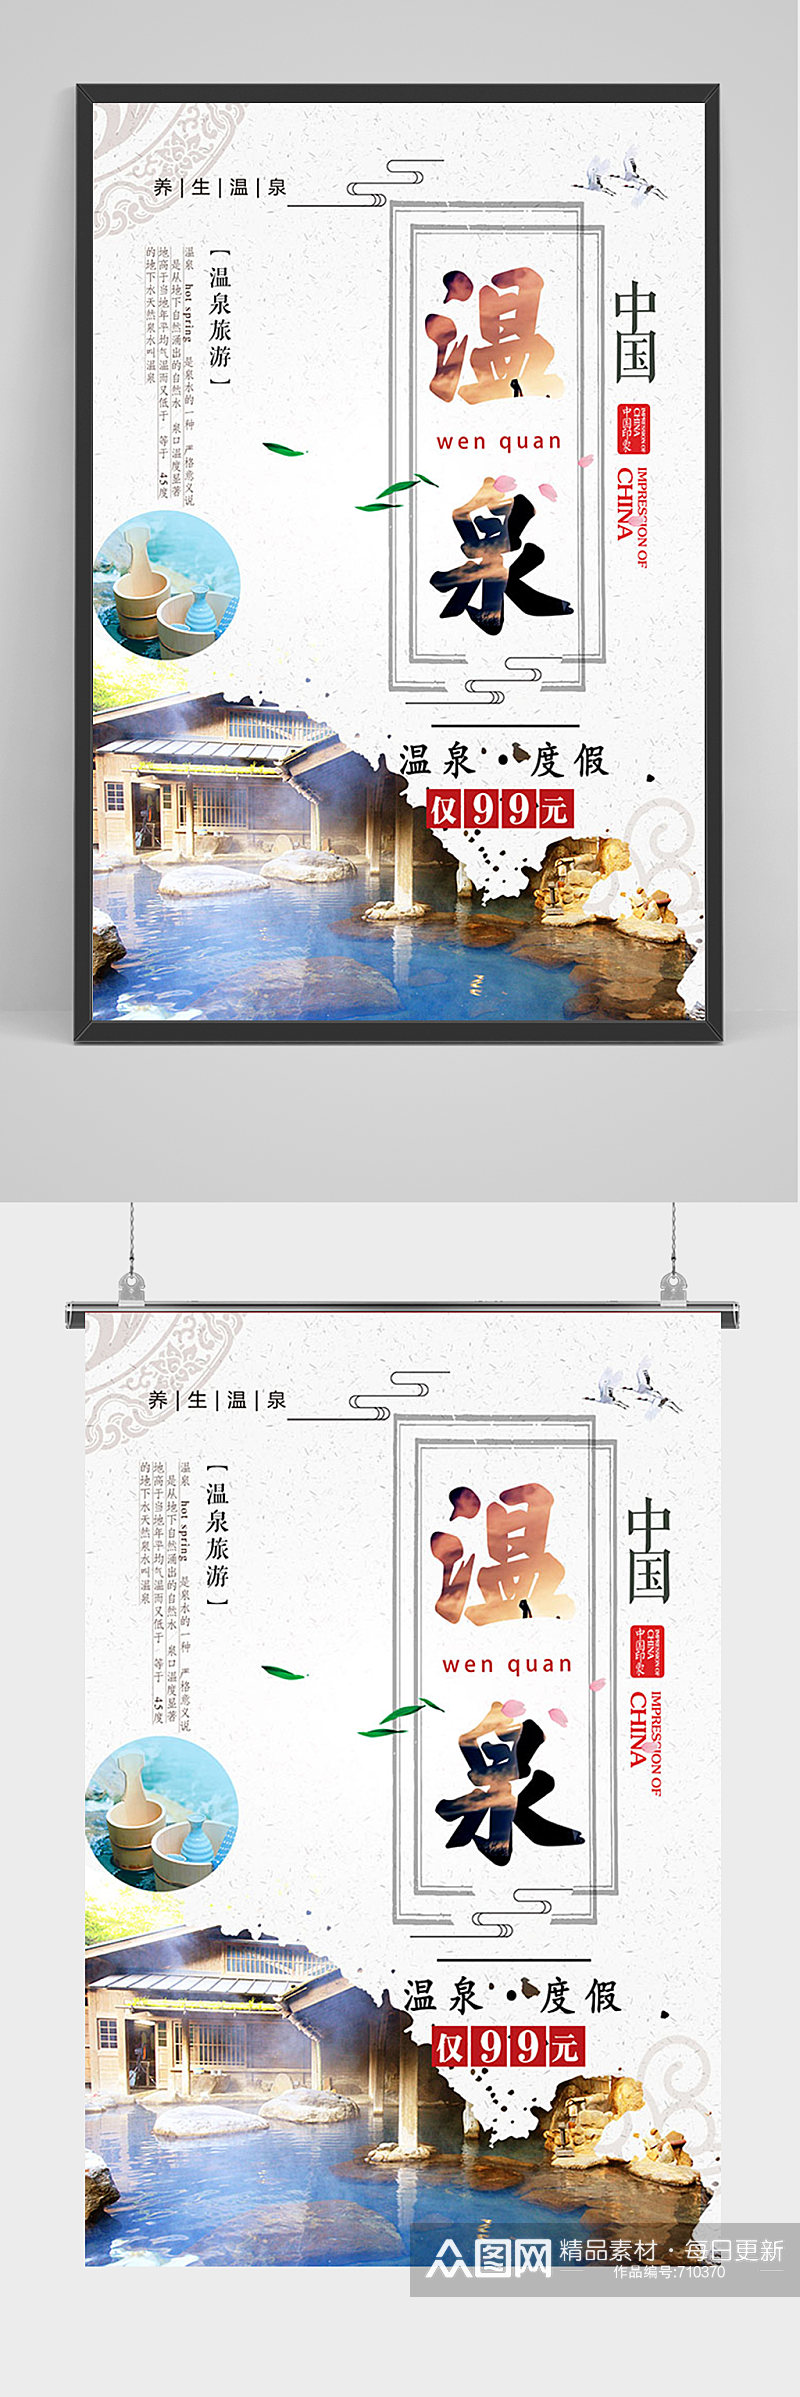 简约中国温泉度假海报素材